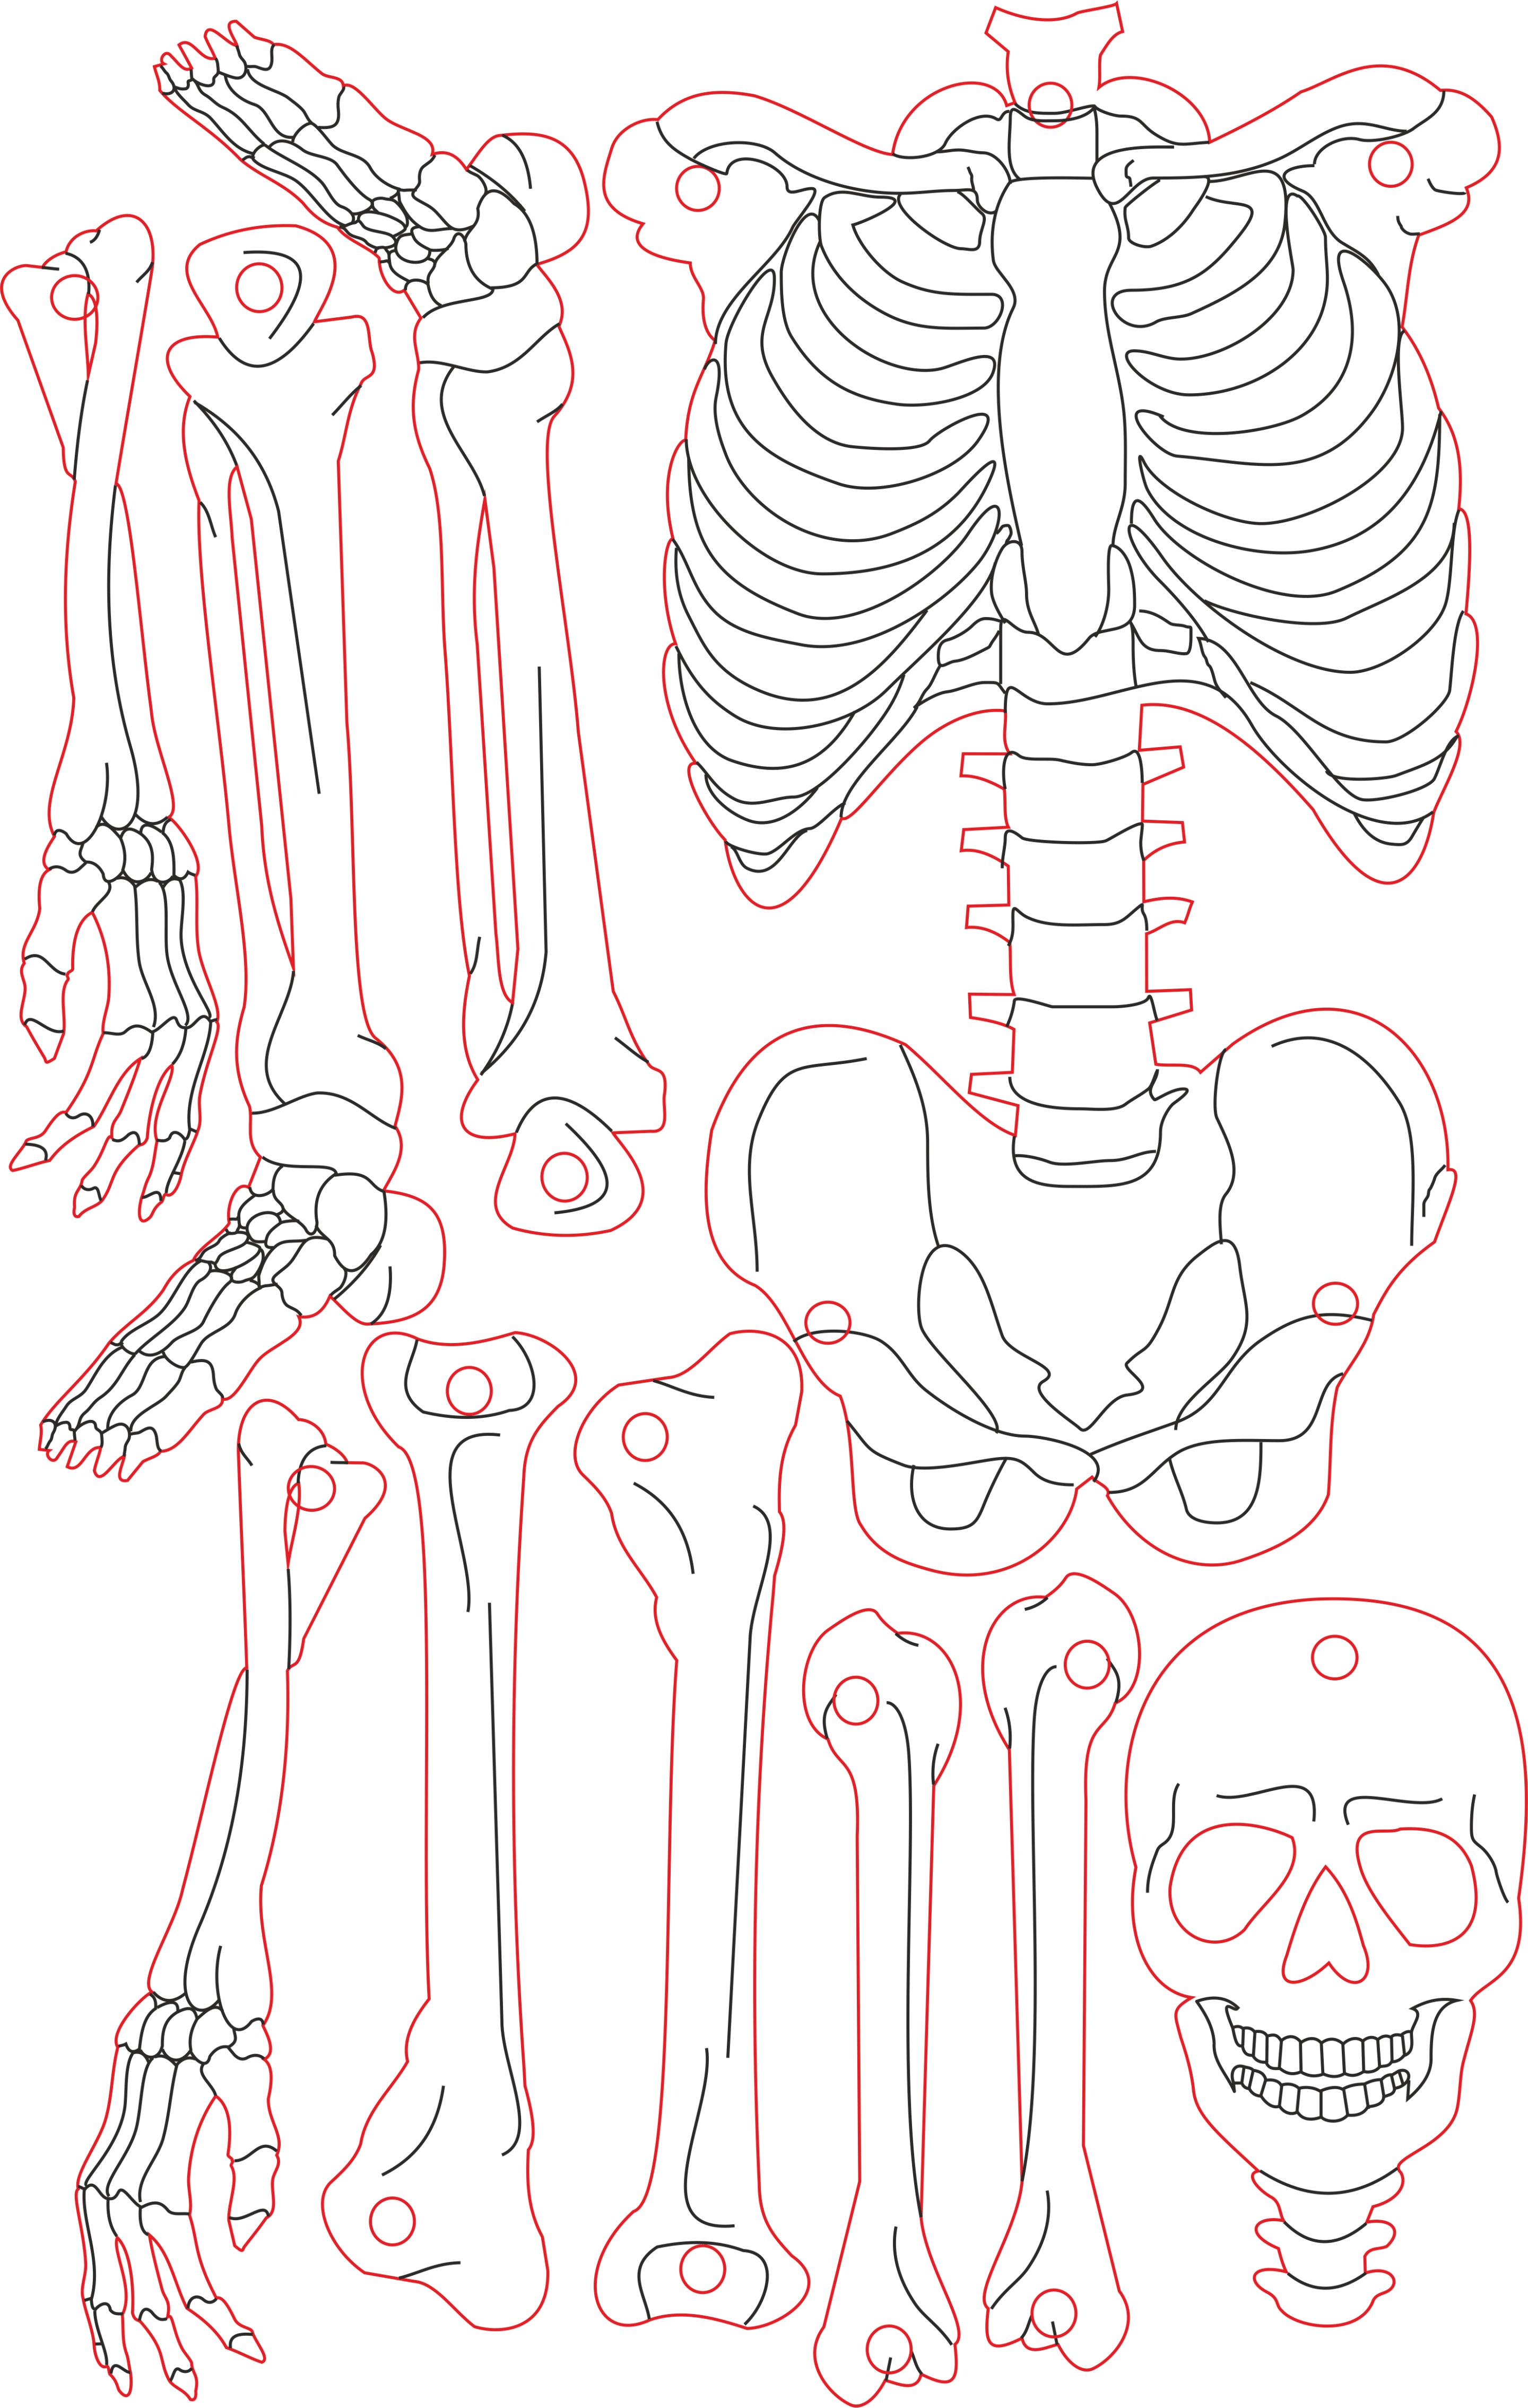 Esqueleto humano - Stanser